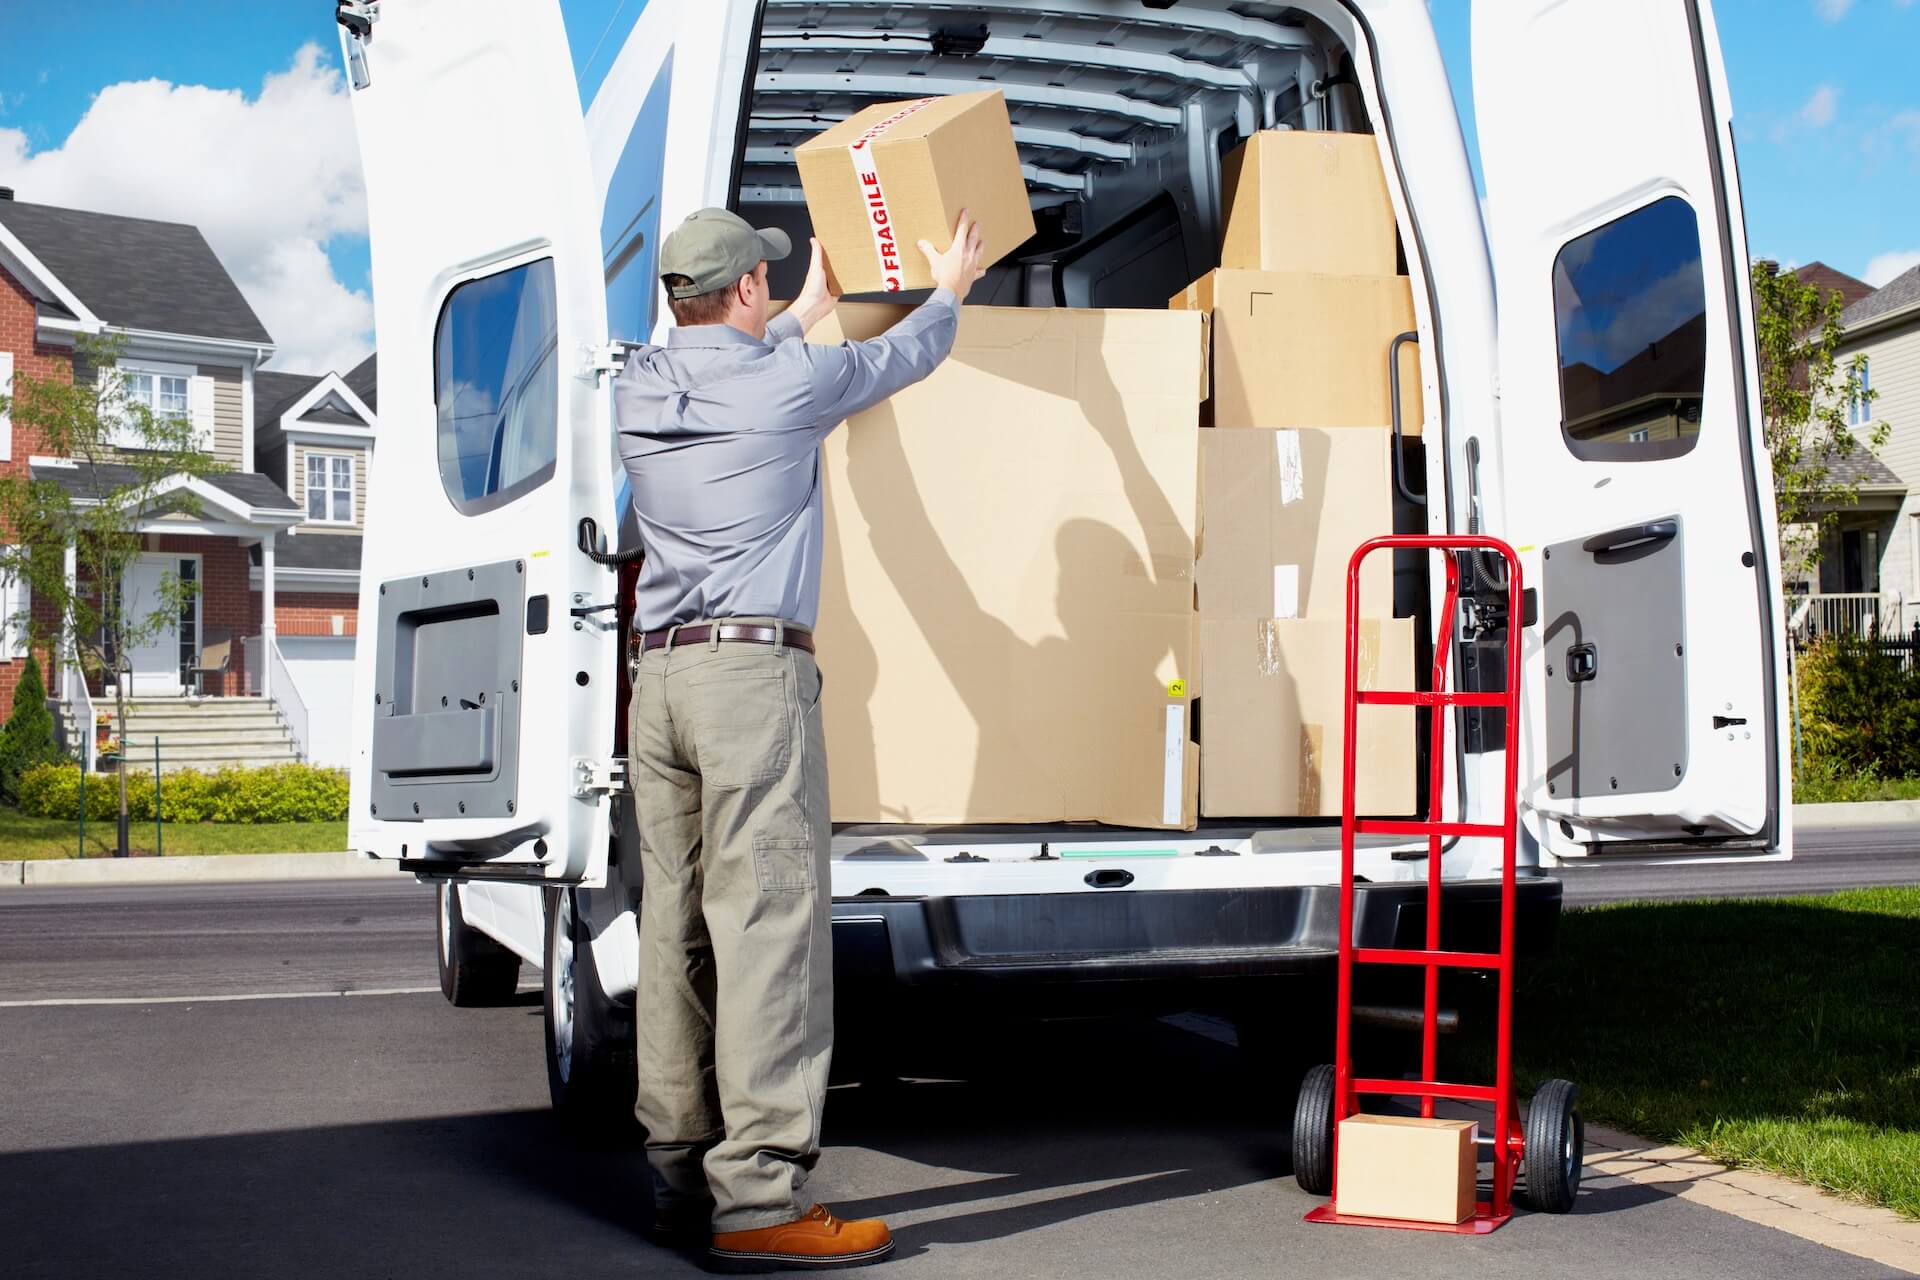 A man placing a box into a van